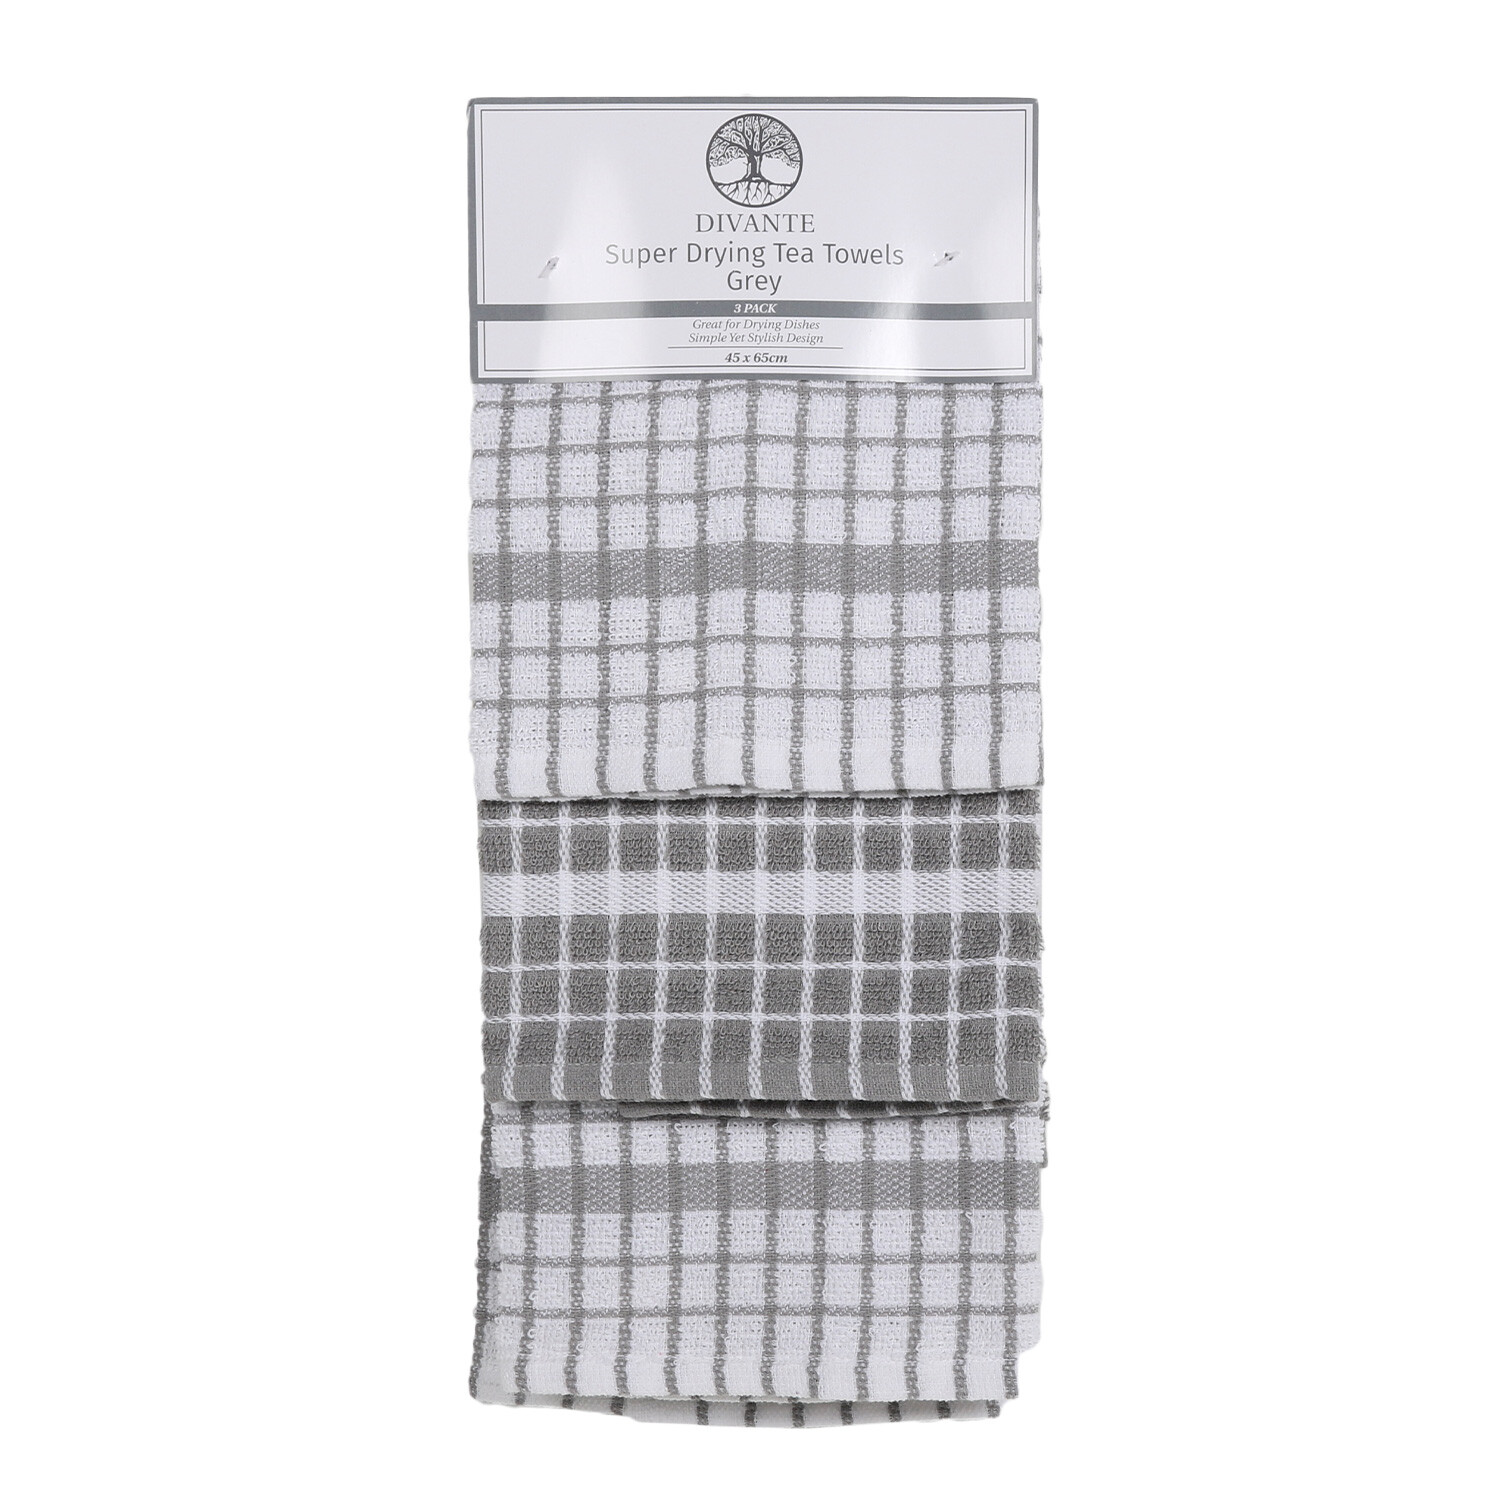 Divante Grey Super Drying Tea Towel 3 Pack Image 1